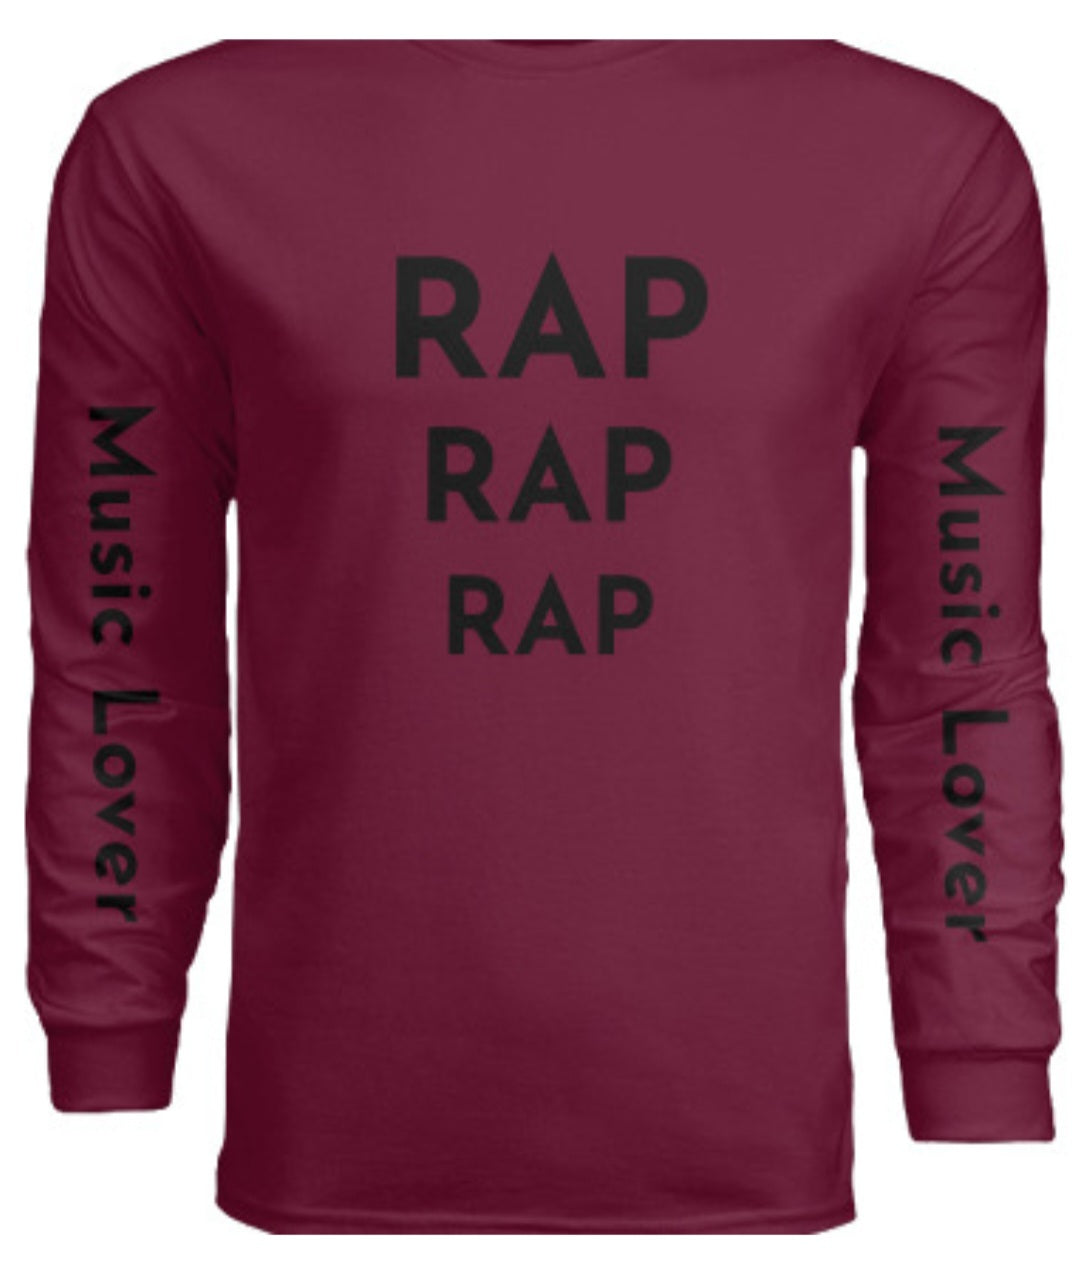 Long Sleeve Sweatshirt (Hip Hop)